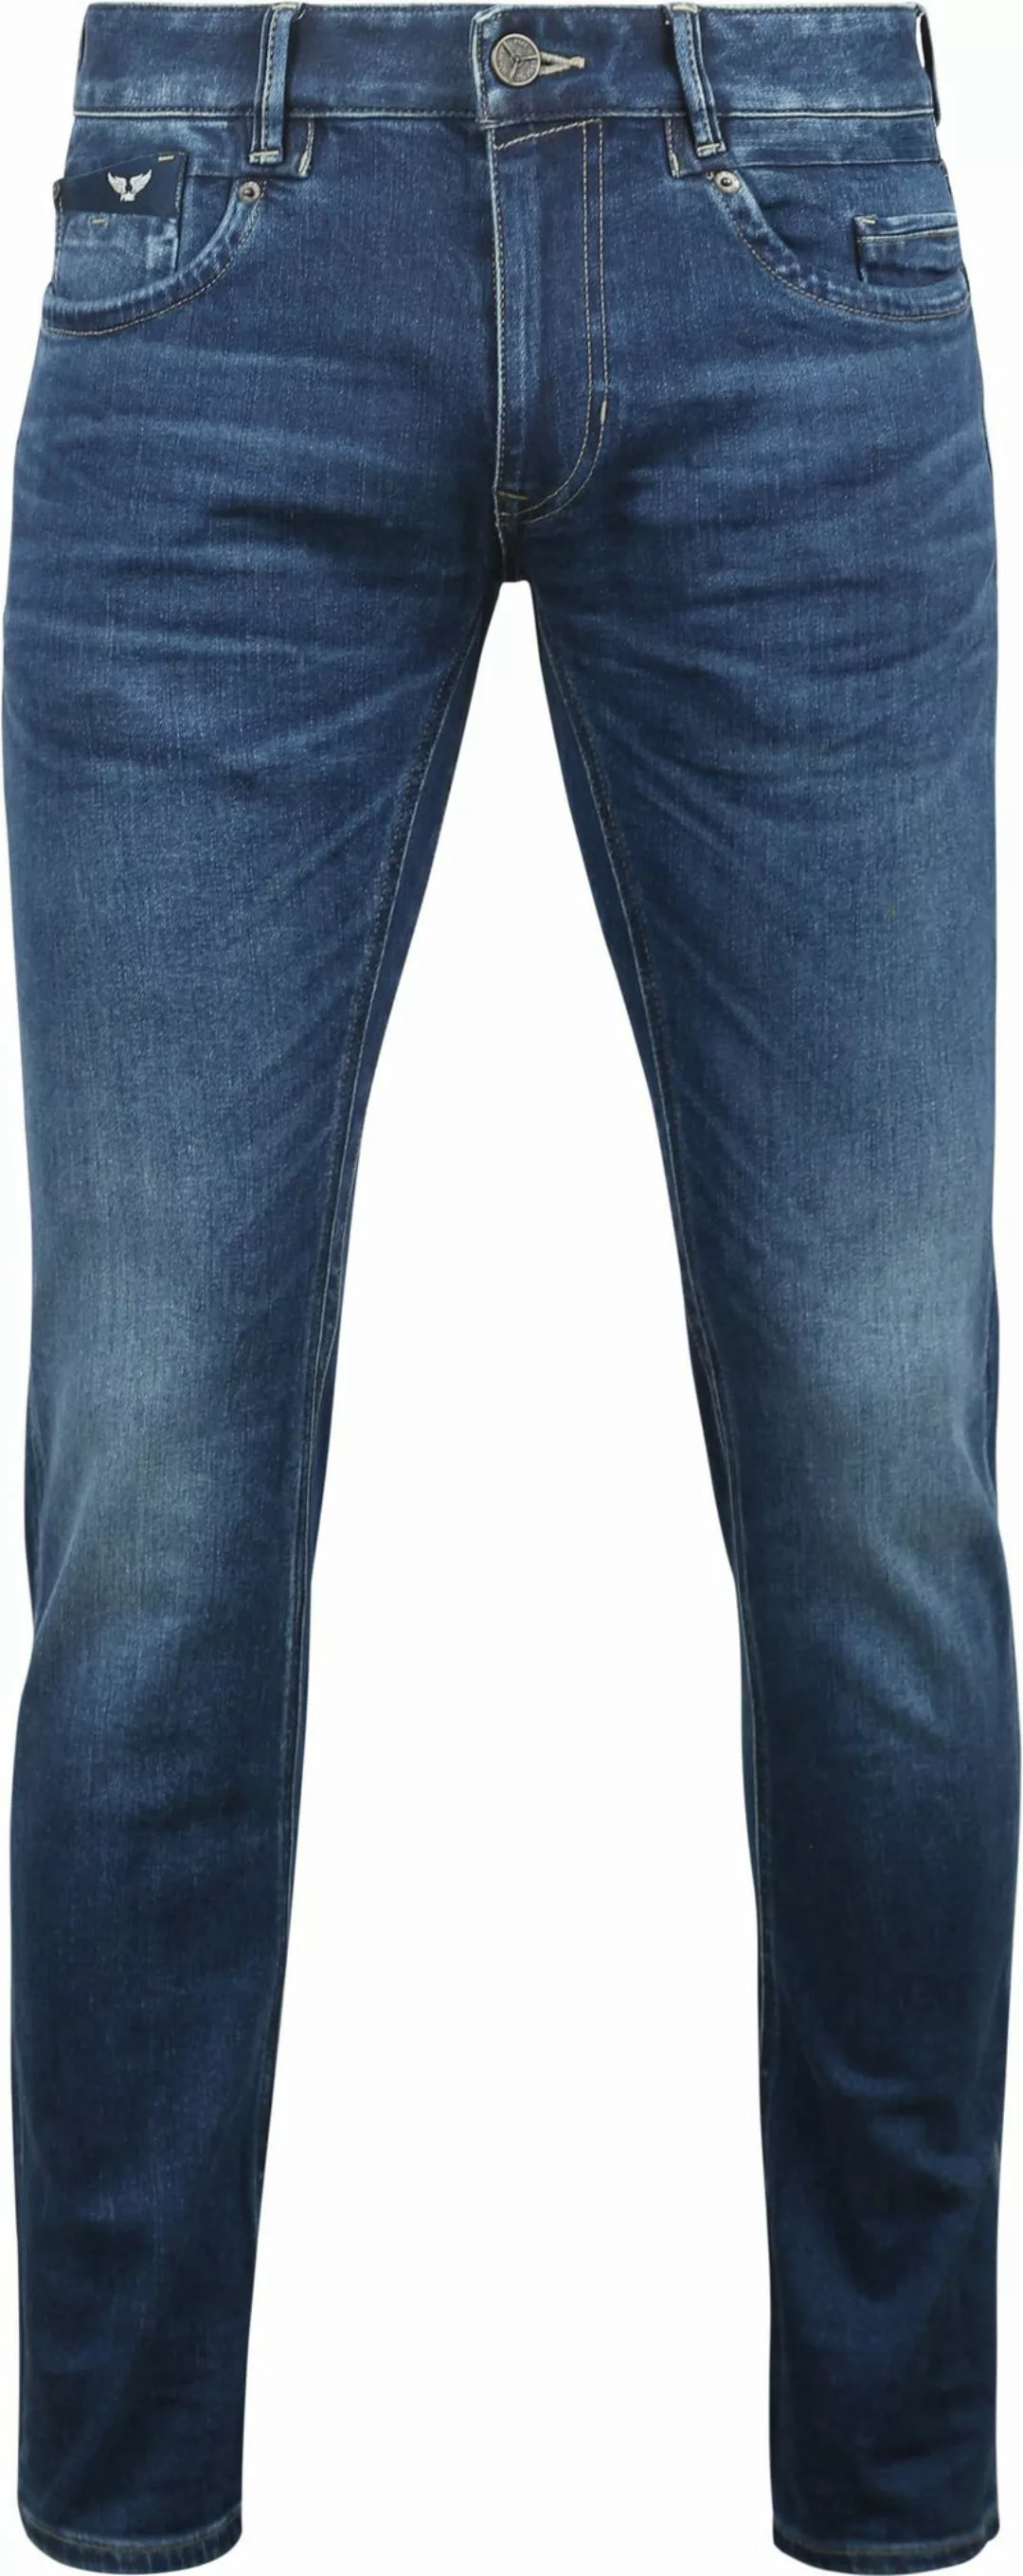 PME Legend Commander 3.0 Jeans Blau TBM - Größe W 34 - L 36 günstig online kaufen